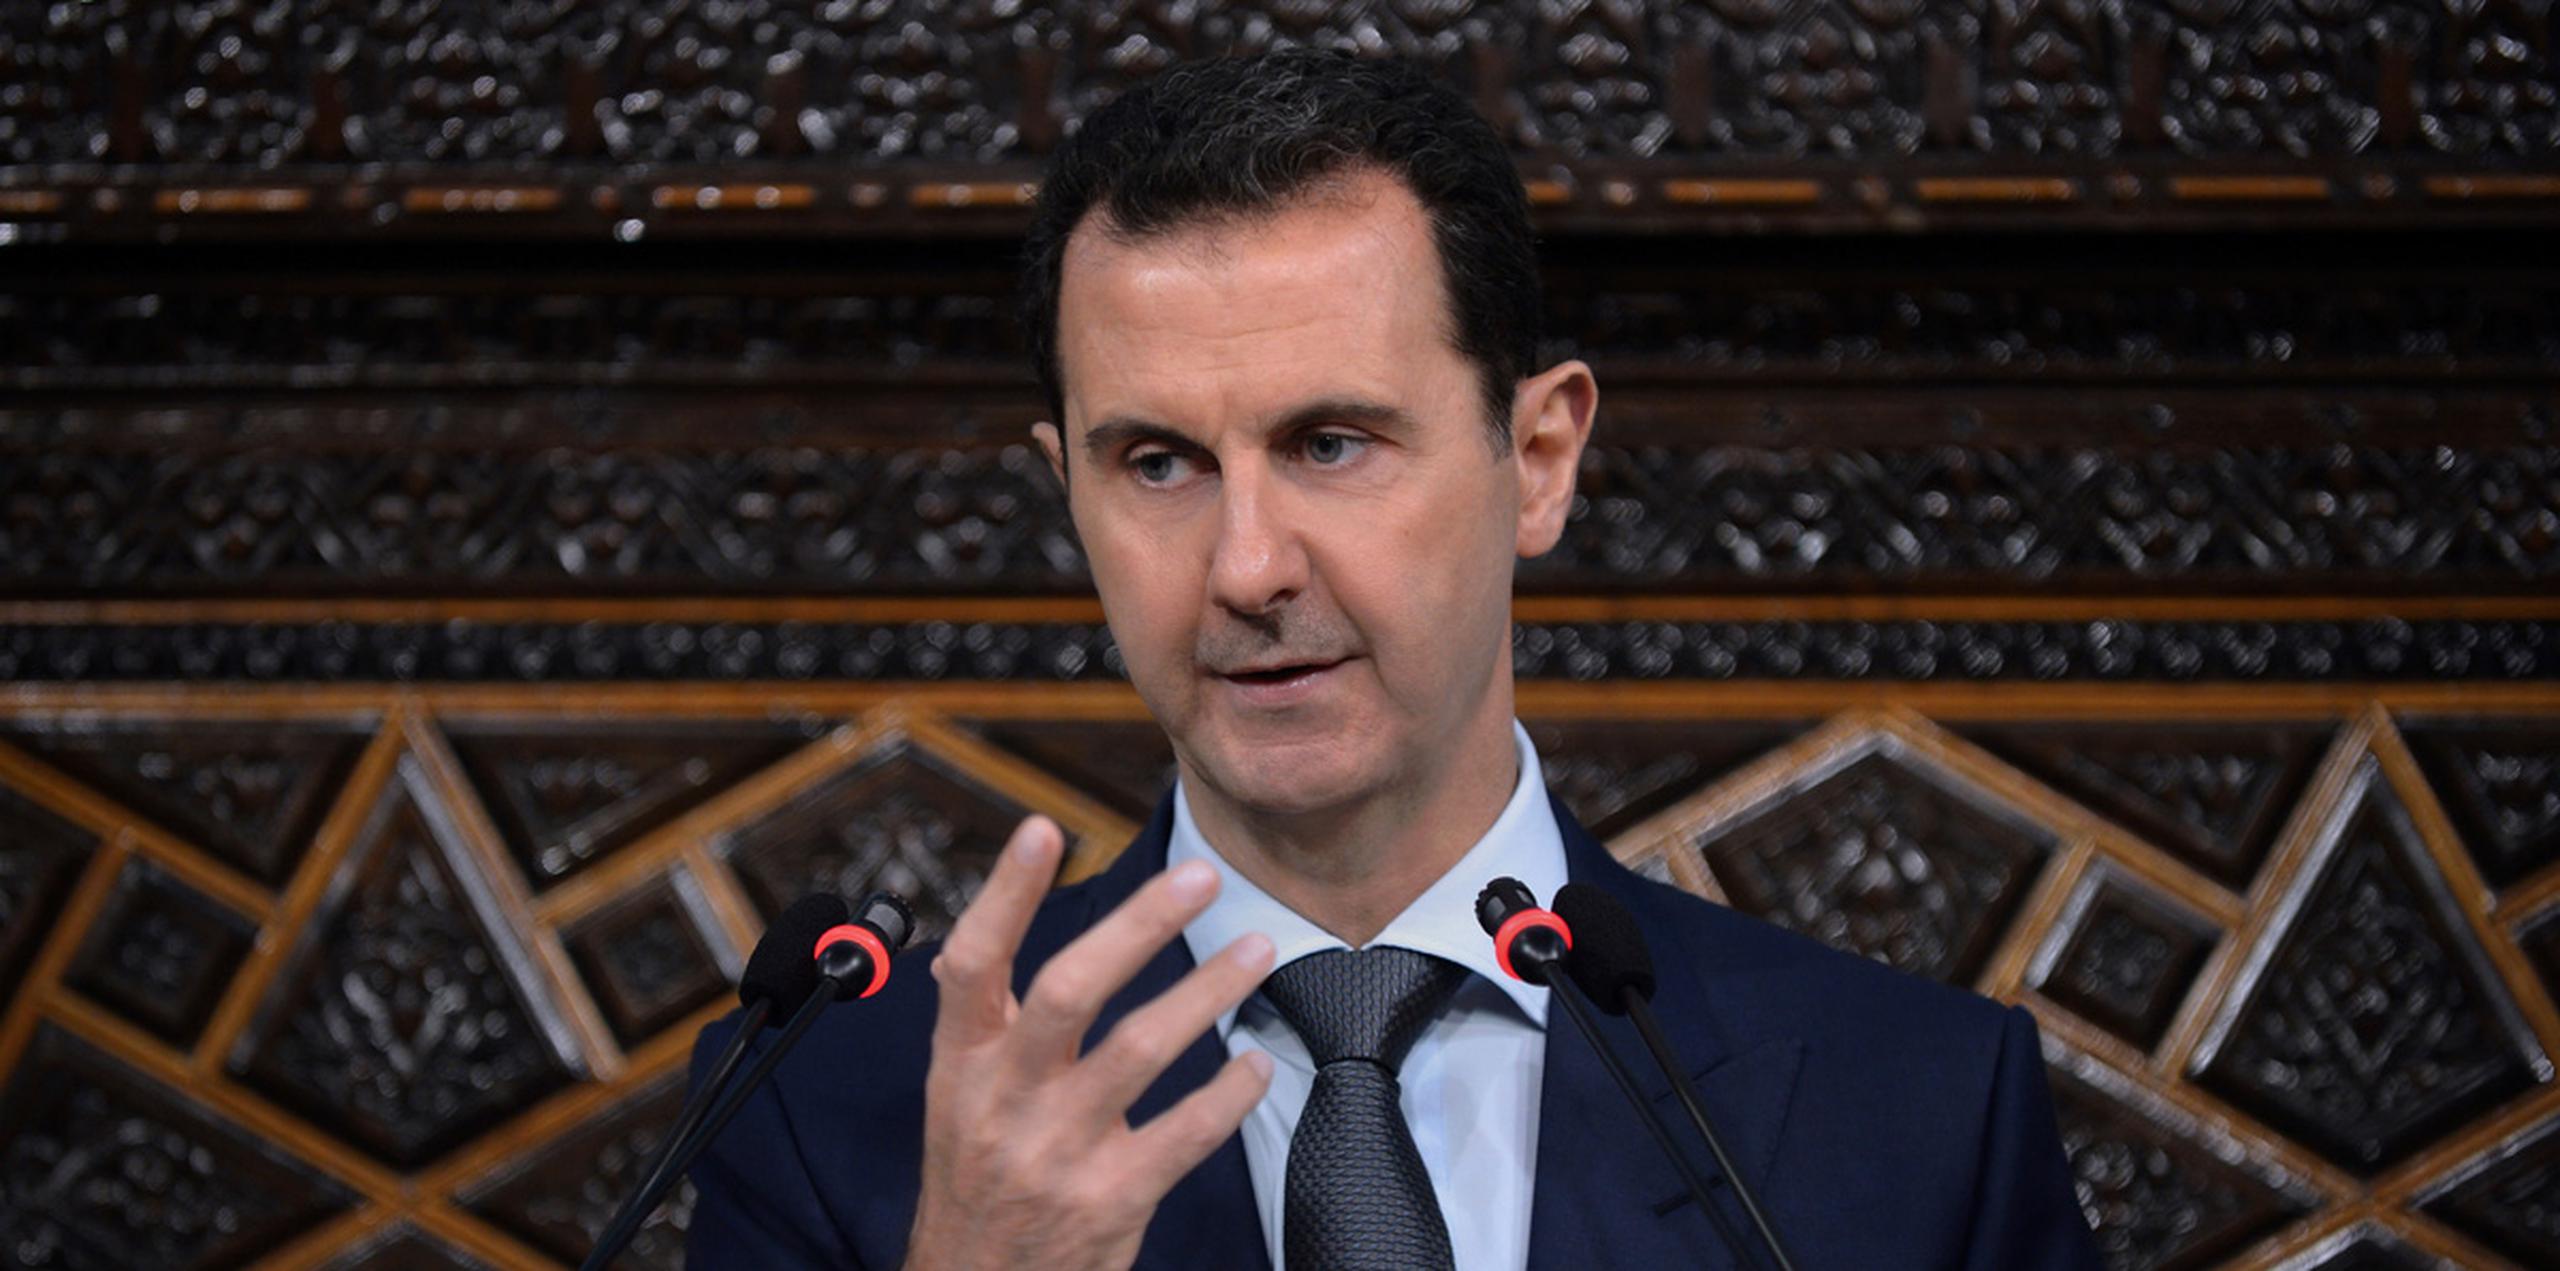 Una coalición liderada por Estados Unidos bombardea objetivos del grupo extremista Estado Islámico en Siria desde 2014, mientras que la fuerza aérea rusa ha atacado tanto a los grupos extremistas como a los rebeldes sirios para asistir a las fuerzas de Assad. (AP)